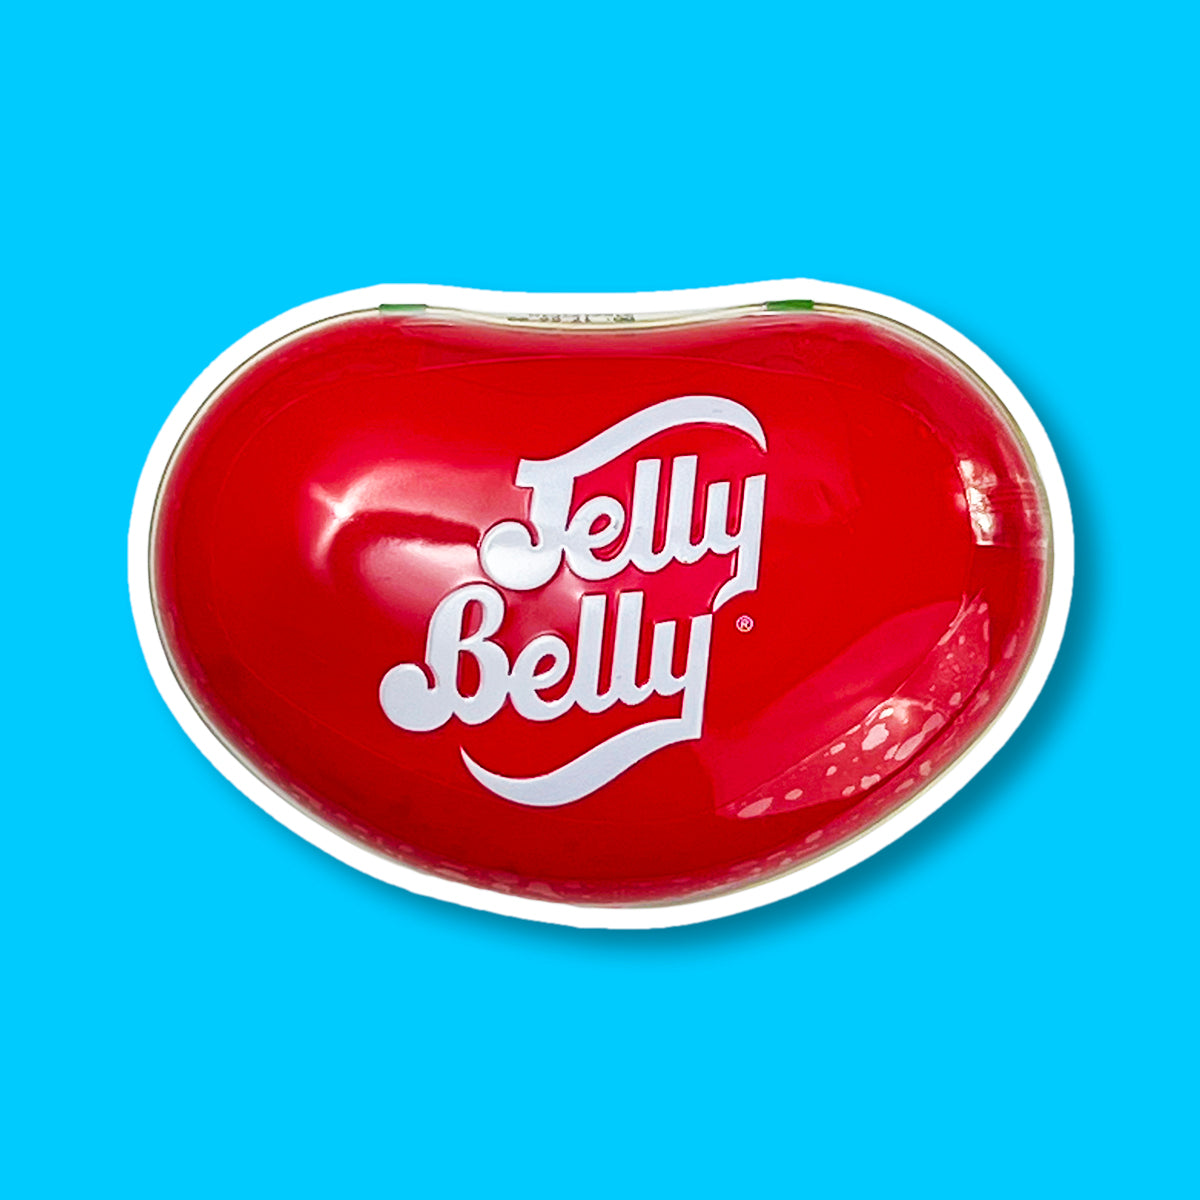 Une grande boite rouge en forme d’haricots avec écrit en blanc « Jelly Belly ». Le tout sur fond bleu